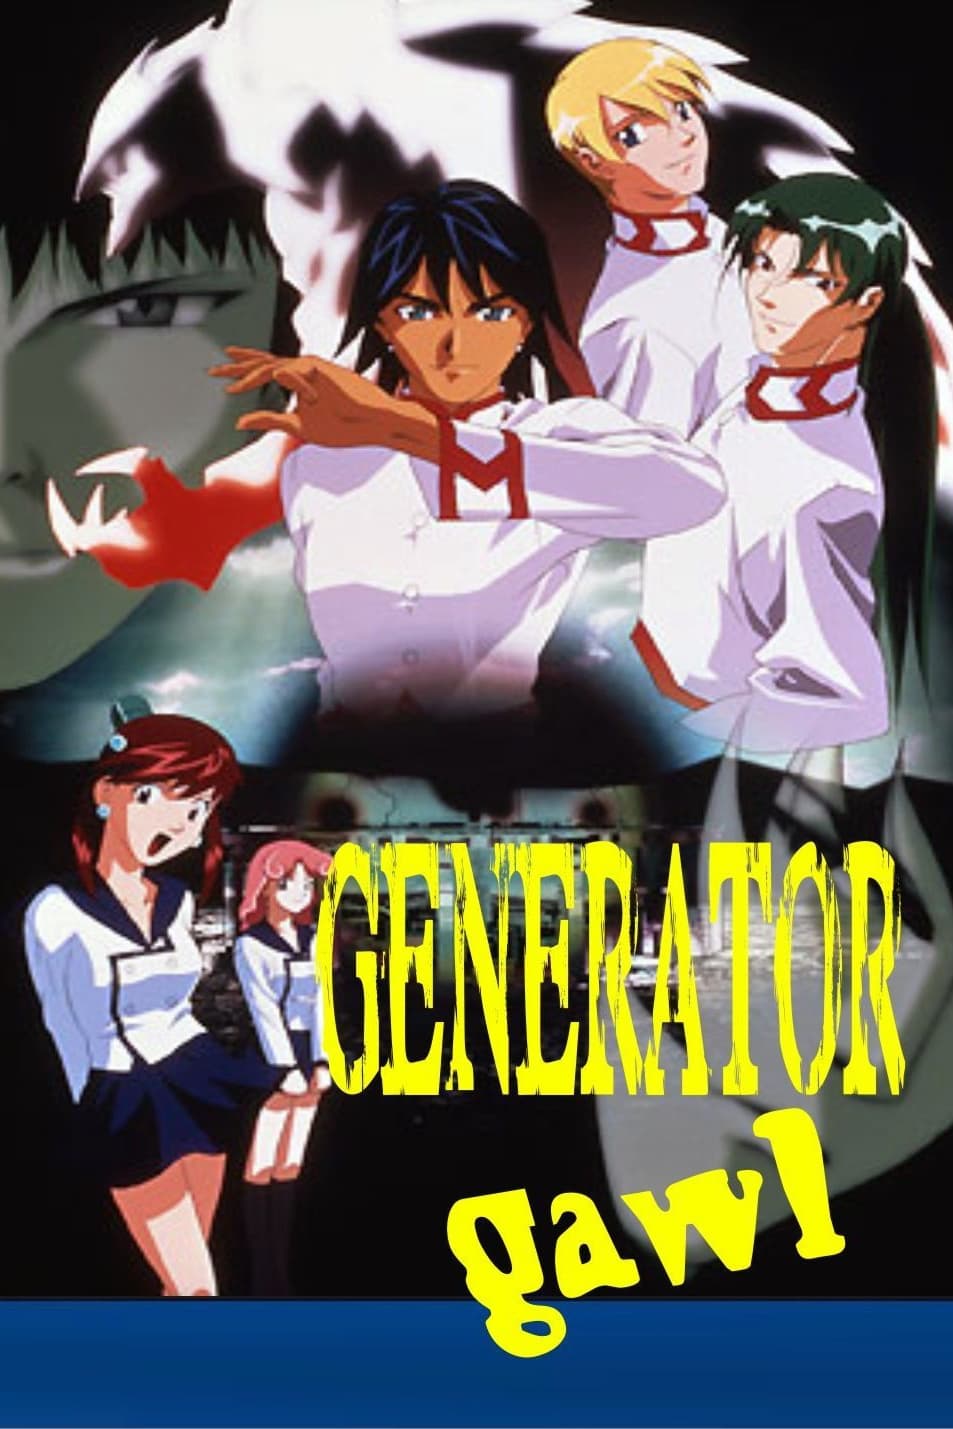 Generator Gawl (1998)